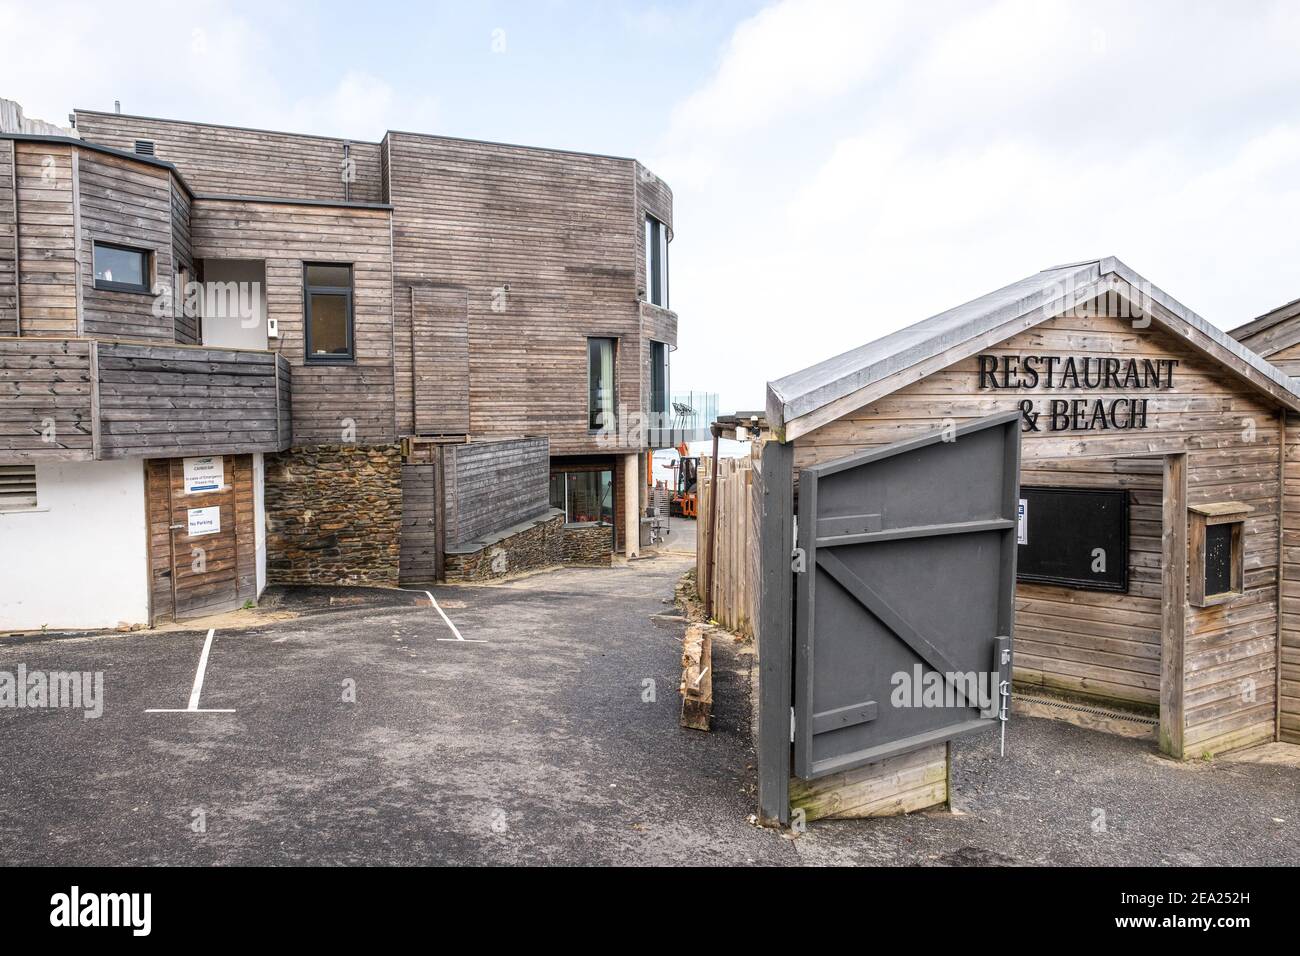 Hôtel, restaurants et hébergement de Carbis Bay à St. Ives Cornwall, en préparation pour le Sommet du G7 en juin 2021. Superbe vue sur la baie. Banque D'Images